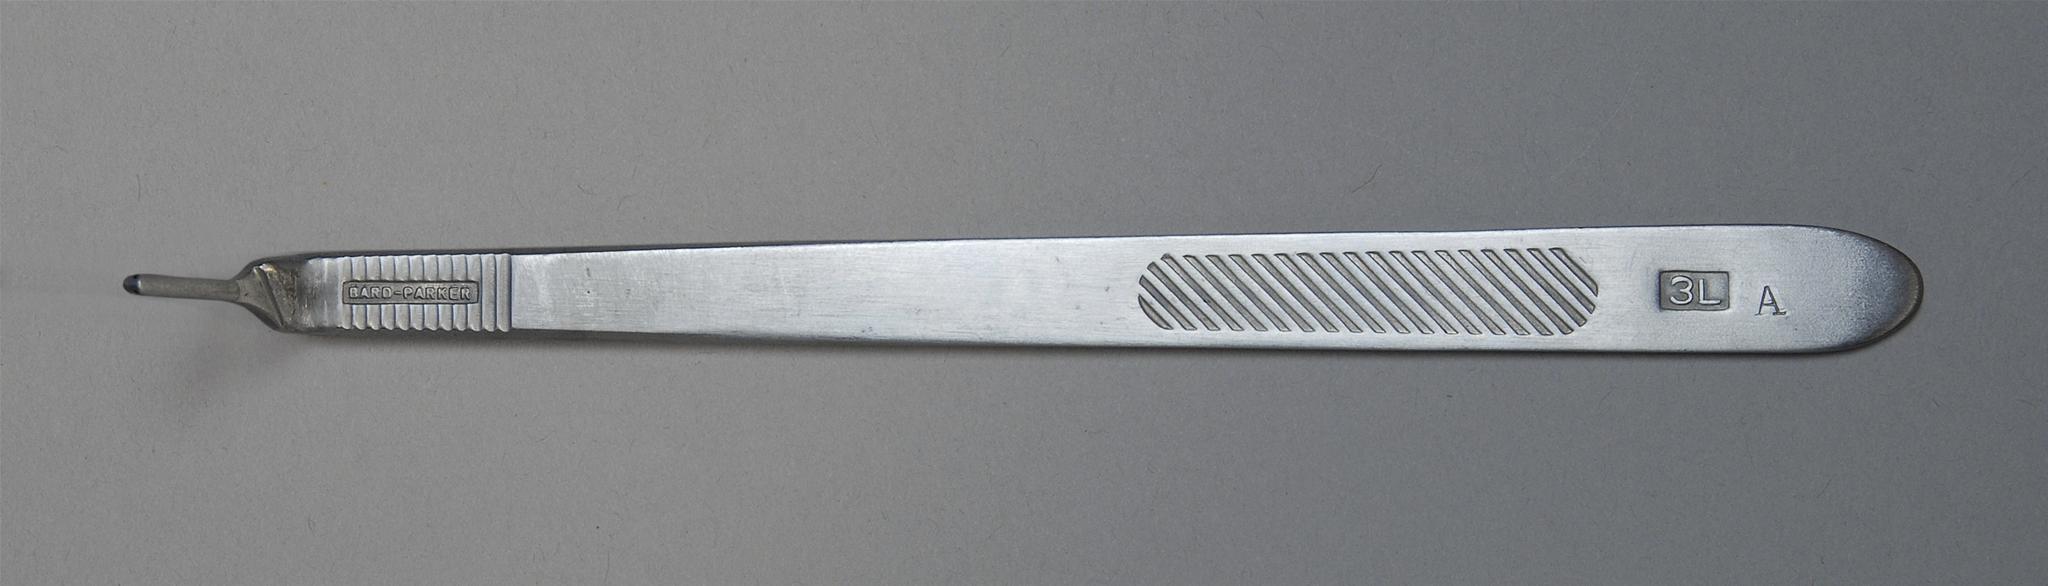 Aspen Bard-Parker Surgical Blade Handles Case 371032 By Aspen Sur